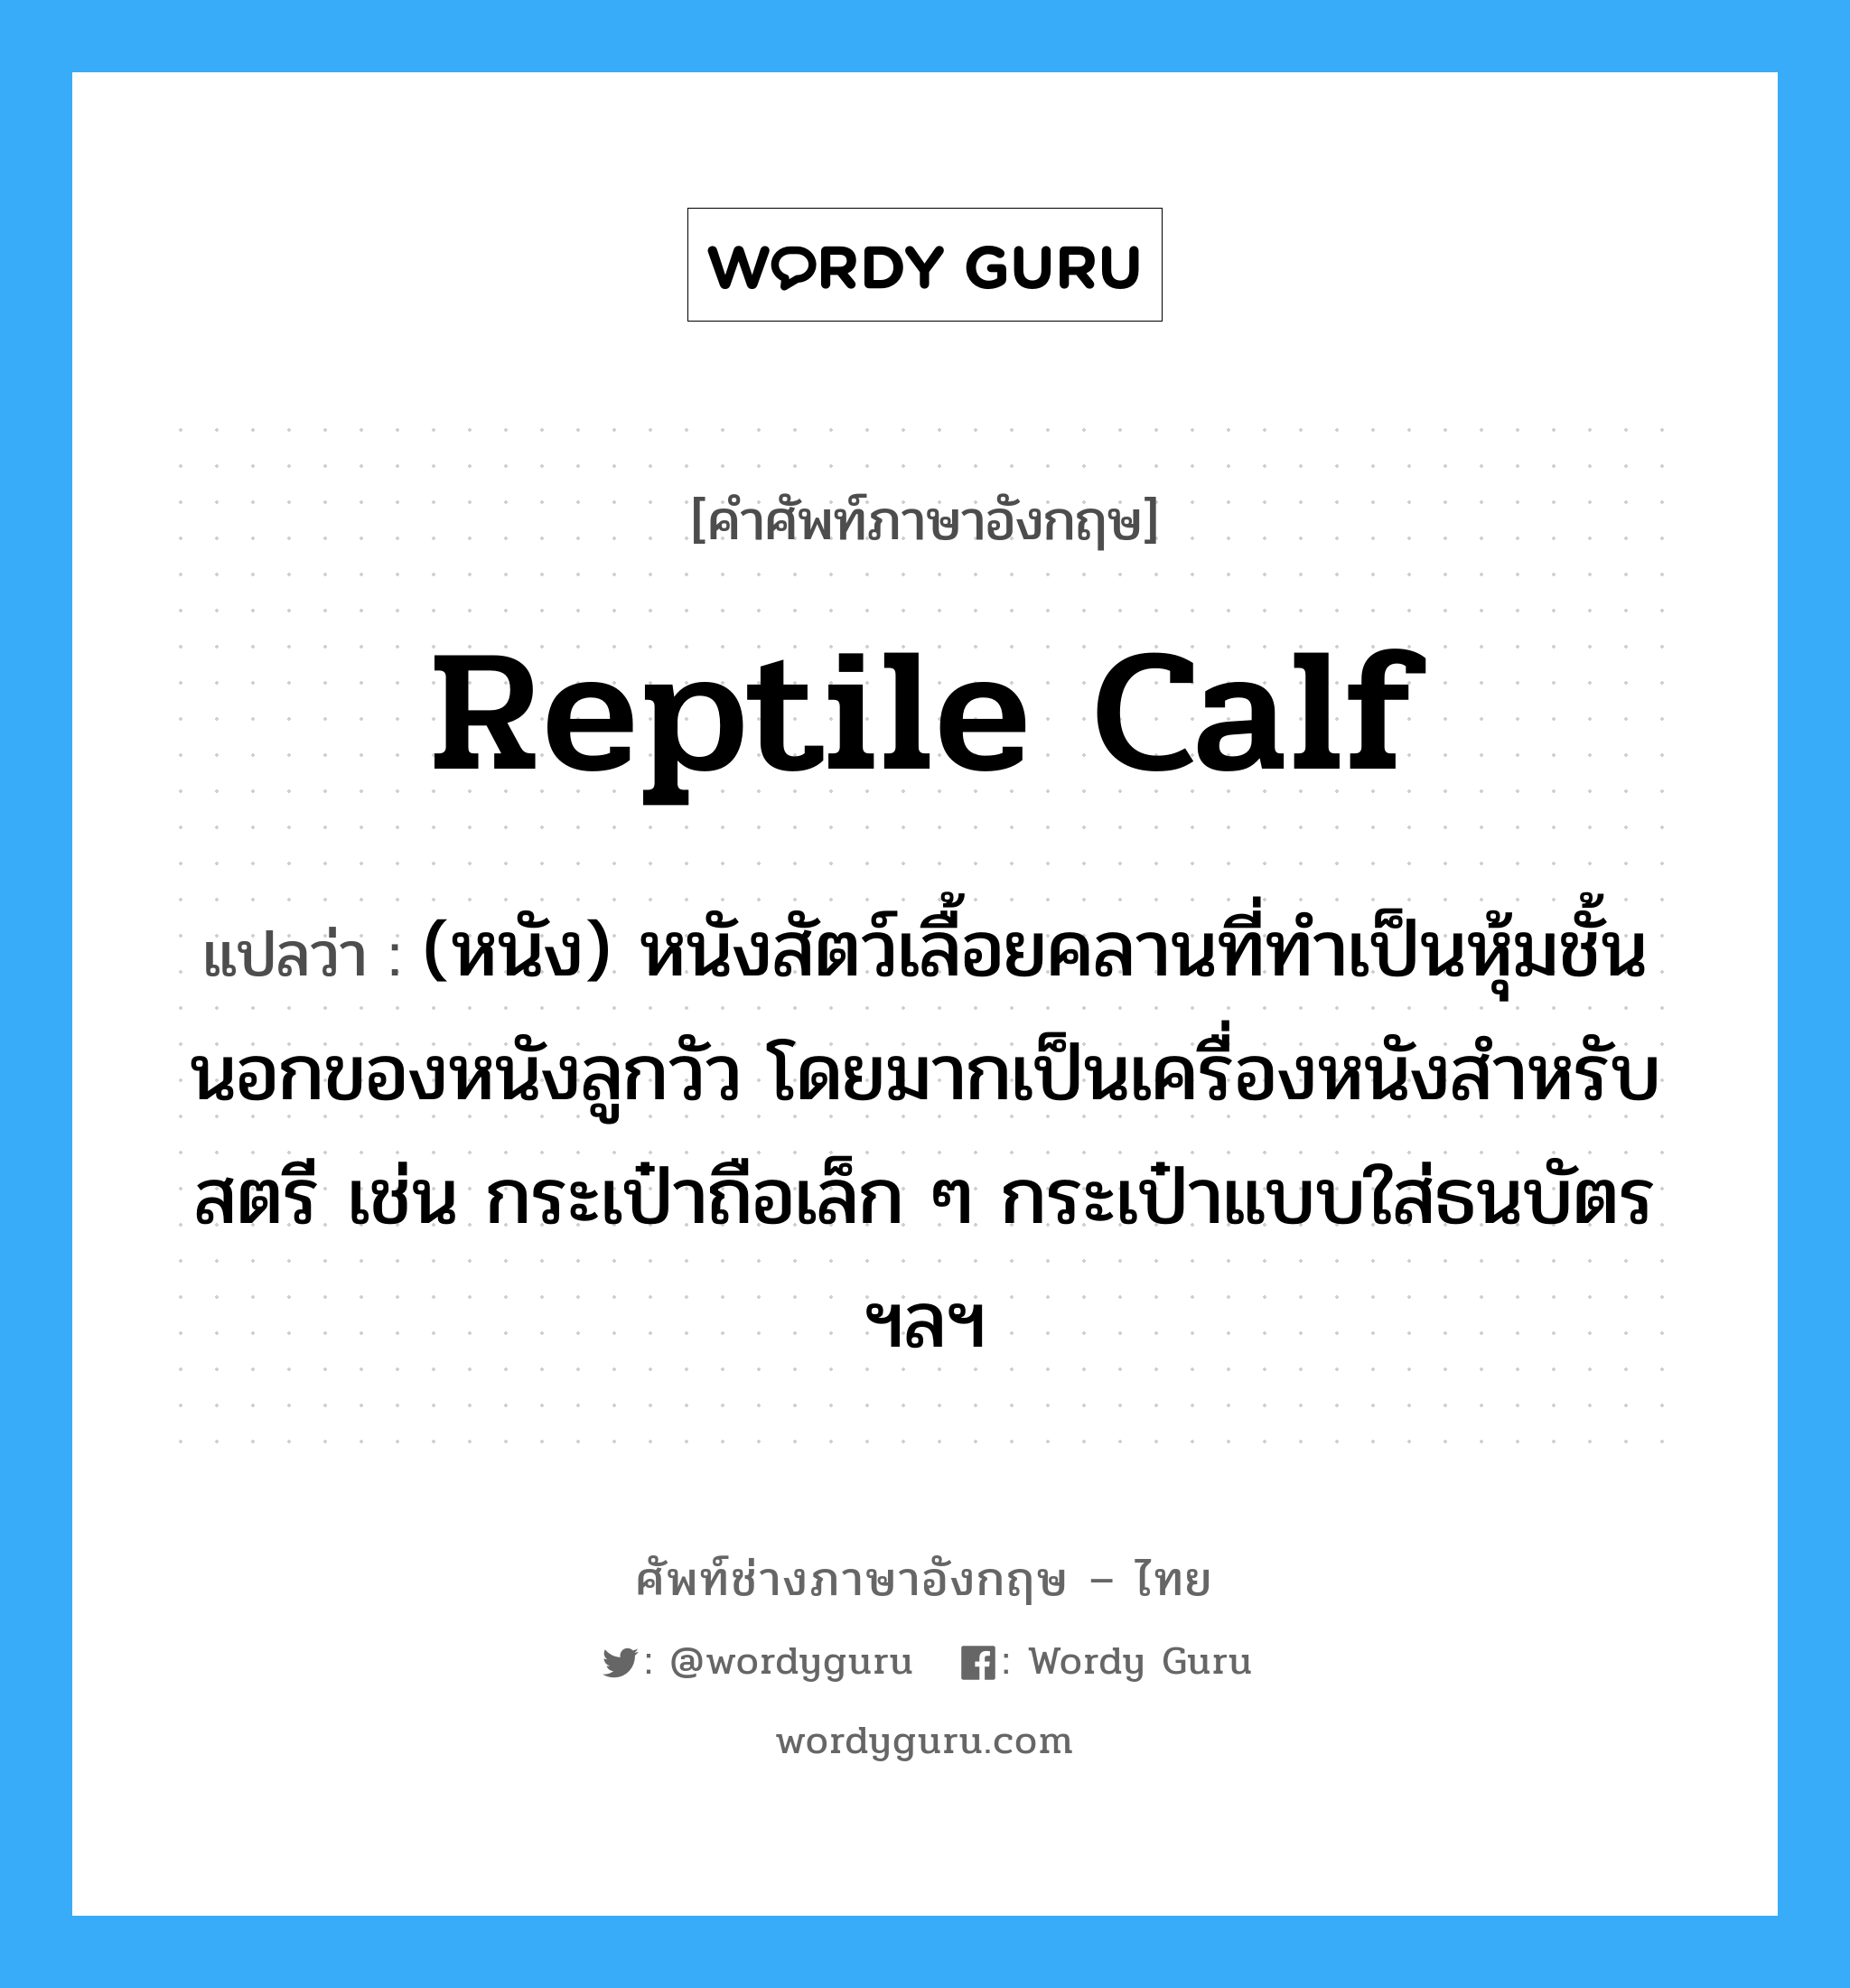 reptile calf แปลว่า?, คำศัพท์ช่างภาษาอังกฤษ - ไทย reptile calf คำศัพท์ภาษาอังกฤษ reptile calf แปลว่า (หนัง) หนังสัตว์เลื้อยคลานที่ทำเป็นหุ้มชั้นนอกของหนังลูกวัว โดยมากเป็นเครื่องหนังสำหรับสตรี เช่น กระเป๋าถือเล็ก ๆ กระเป๋าแบบใส่ธนบัตร ฯลฯ